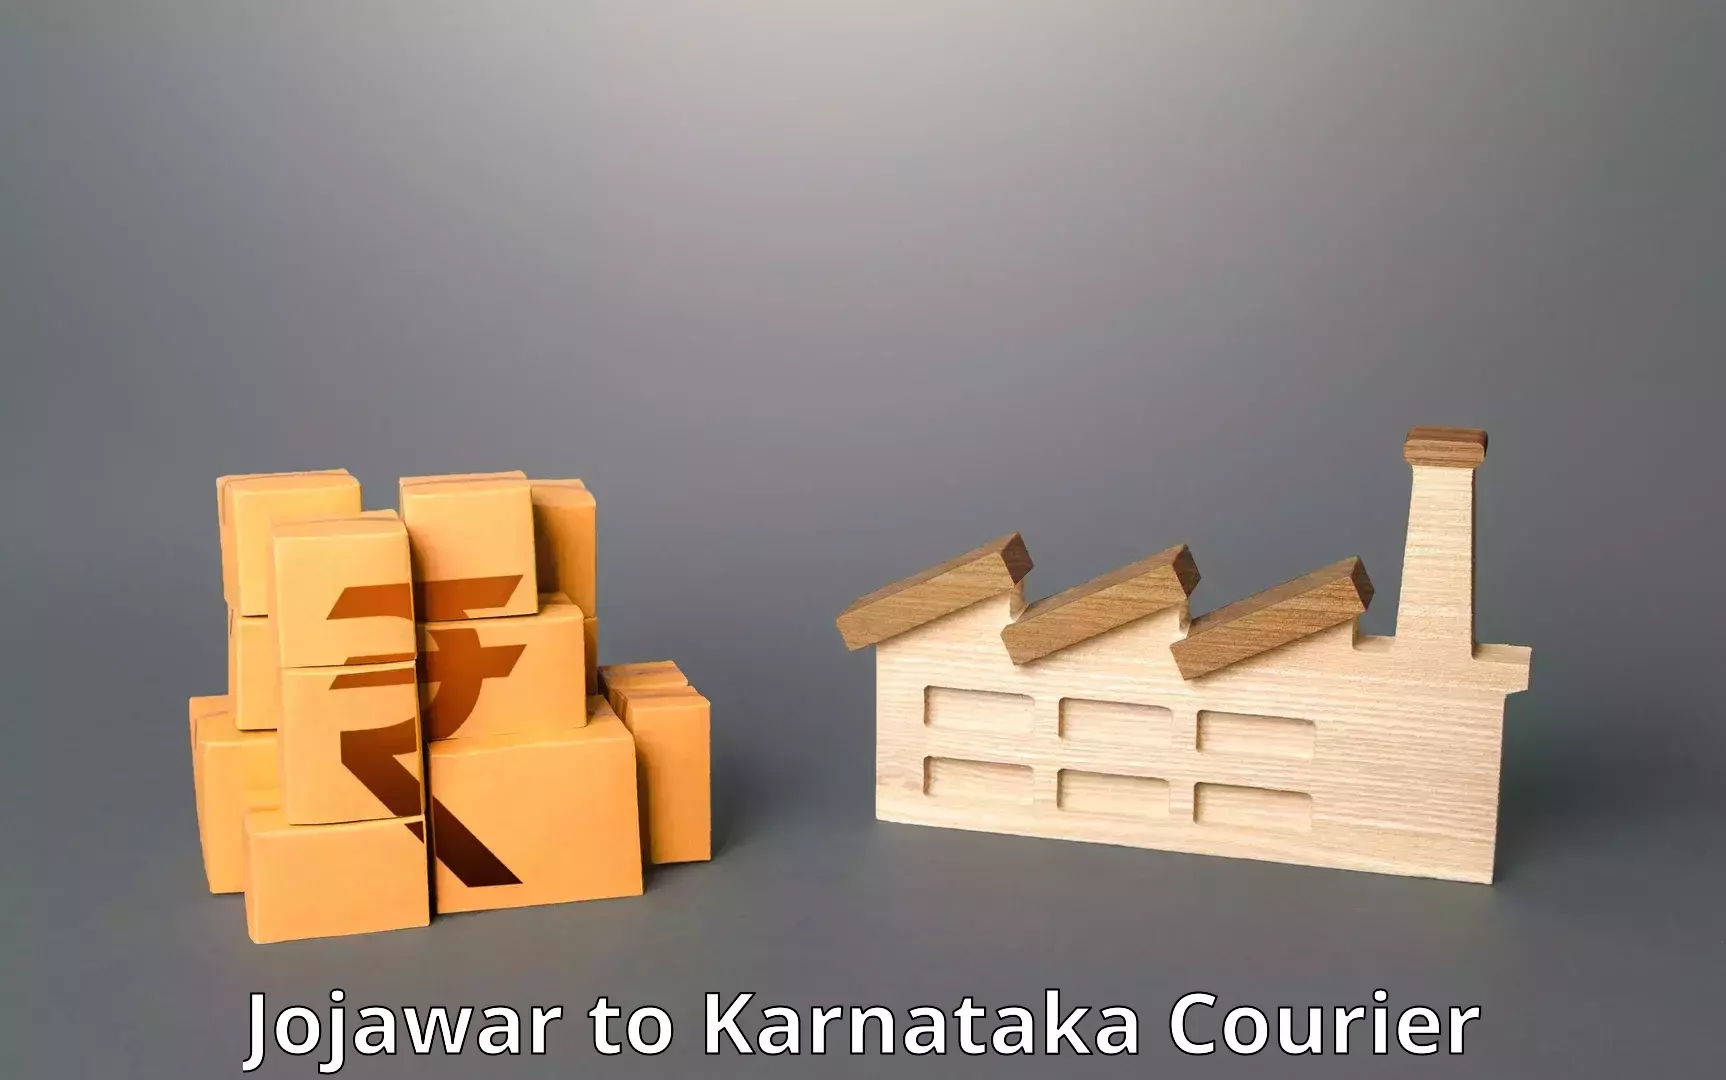 Modern delivery methods Jojawar to Karnataka